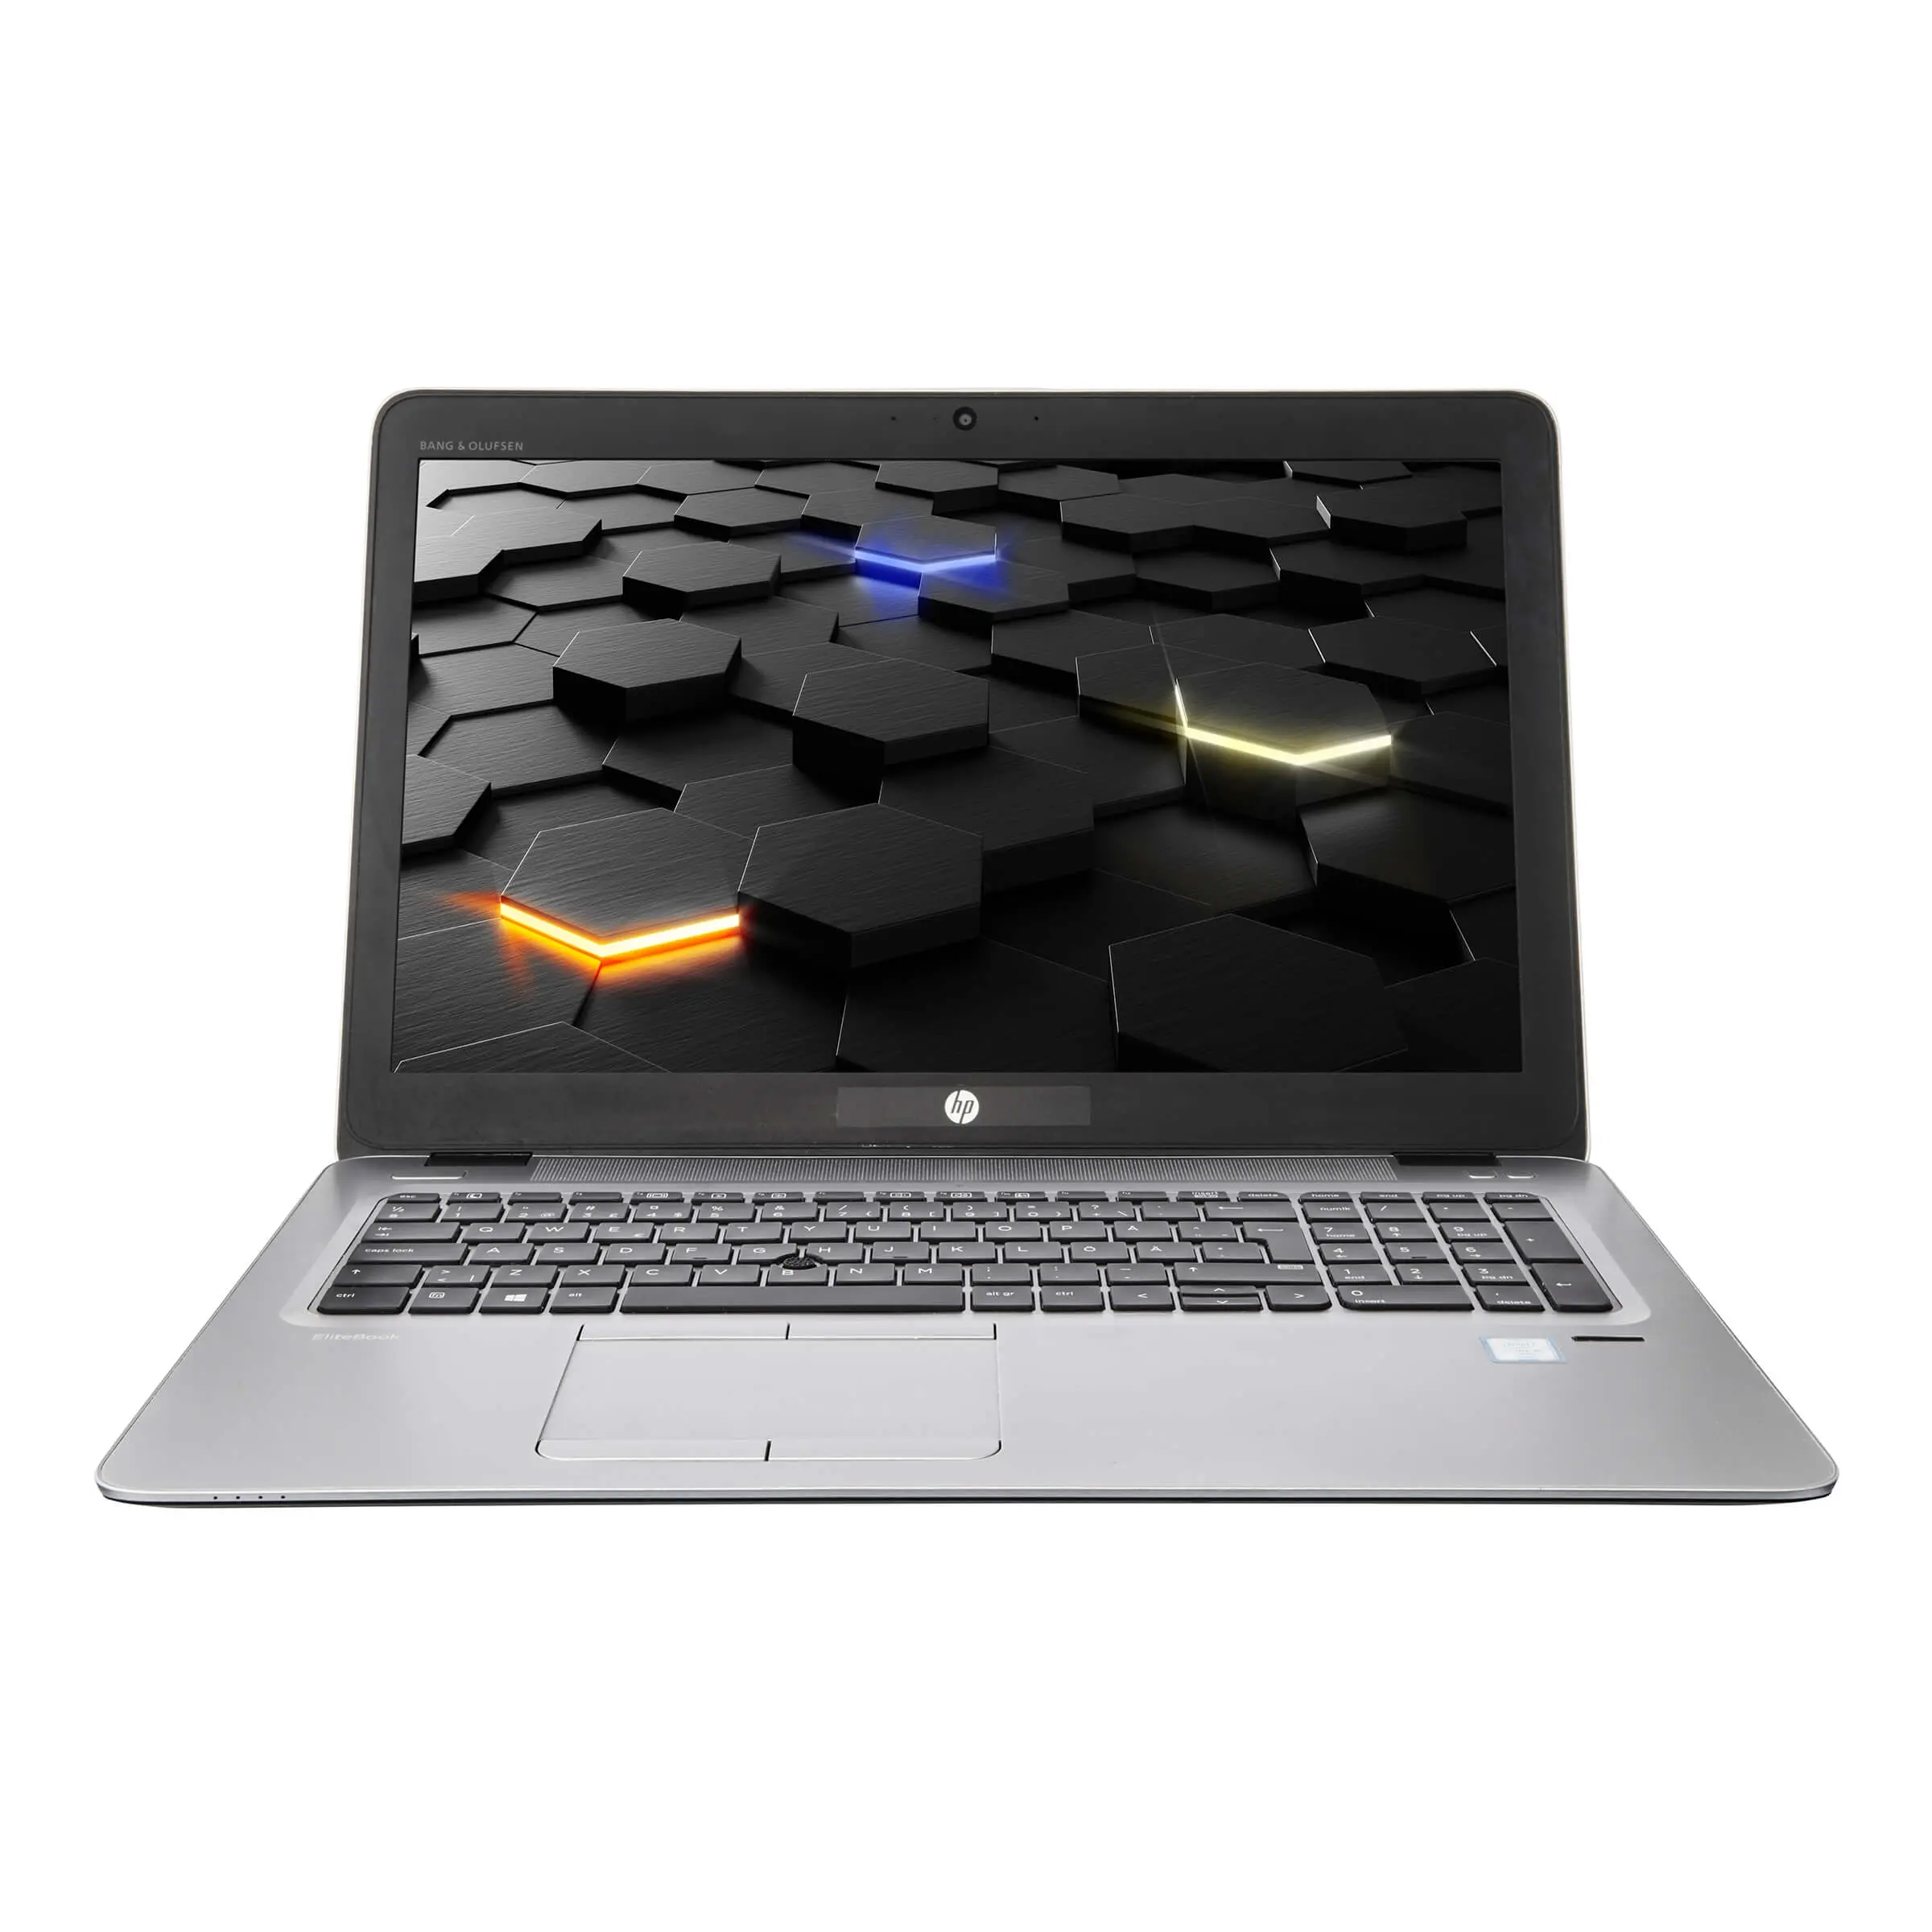 HP EliteBook 850 G3, i5, 15.6 Zoll Full-HD IPS, 16GB, 250GB SSD + 2TB HDD, Webcam, LTE, beleuchtete Tastatur, Windows 10 Pro